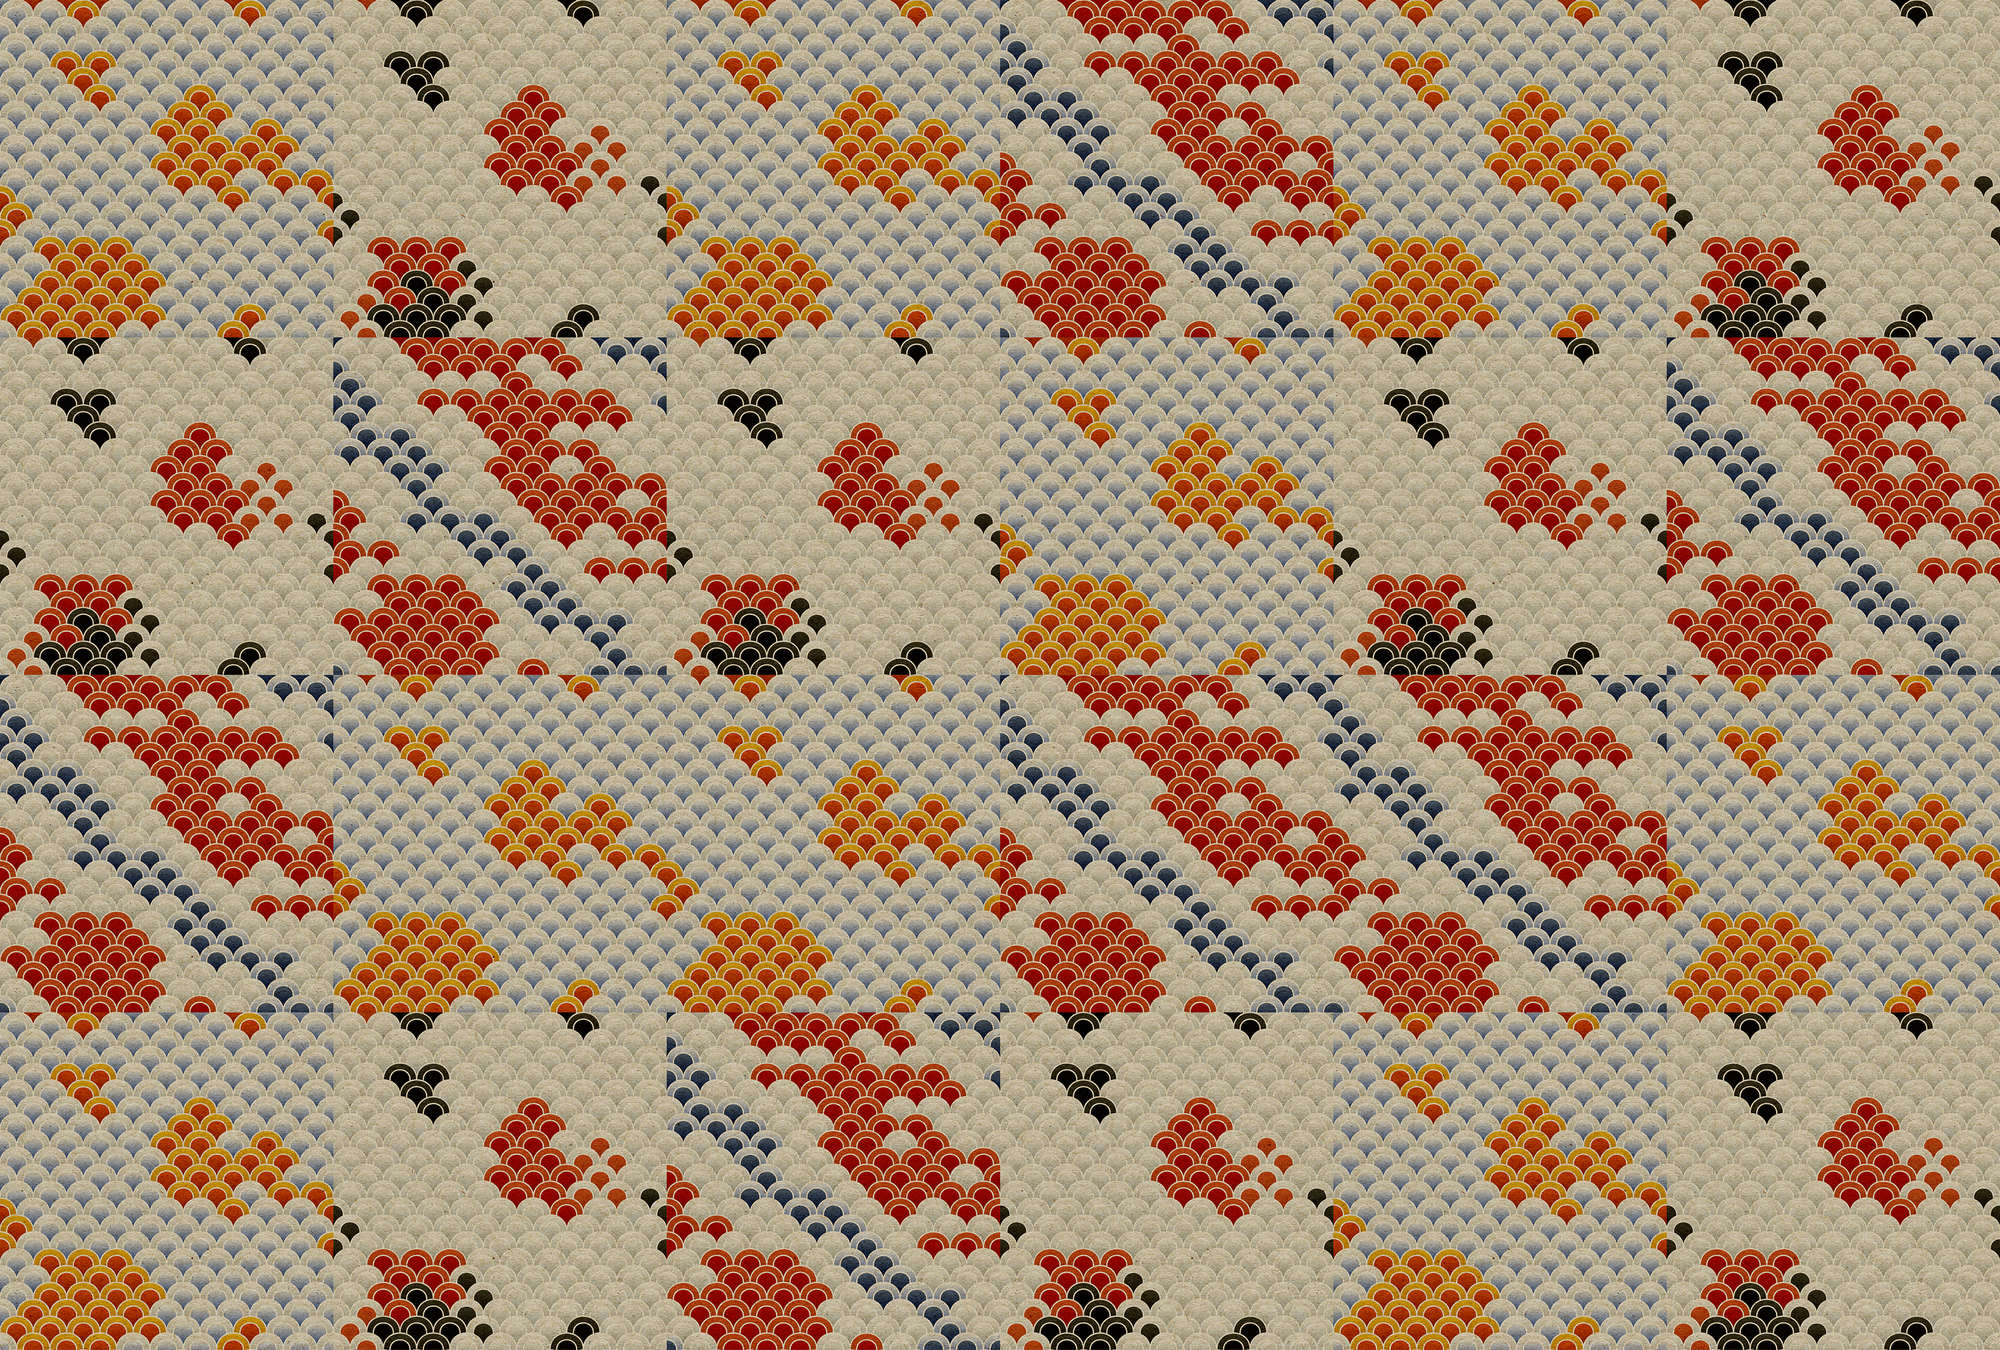             Koi 3 - Estanque Koi Abstracto como Impresión Digital sobre Estructura de Cartón - Beige, Naranja | Premium Smooth Fleece
        